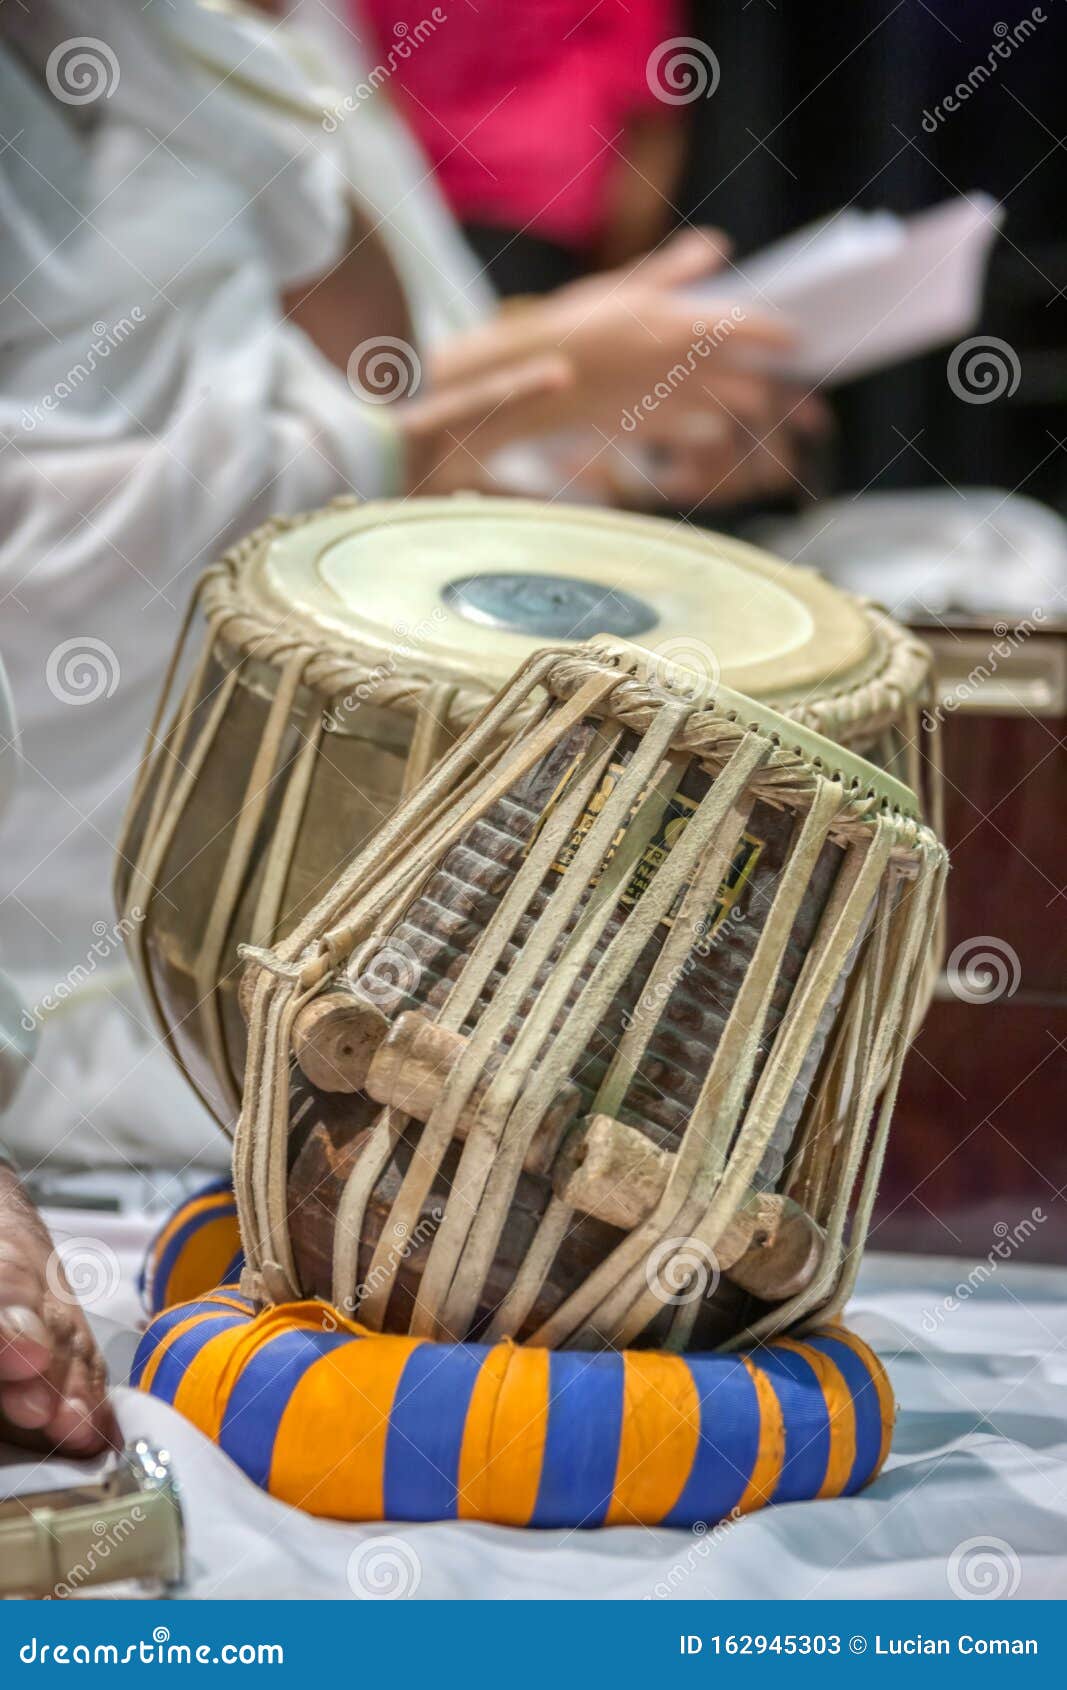 kalkoen arm marge Indische trommels stock afbeelding. Image of trommelaar - 162945303